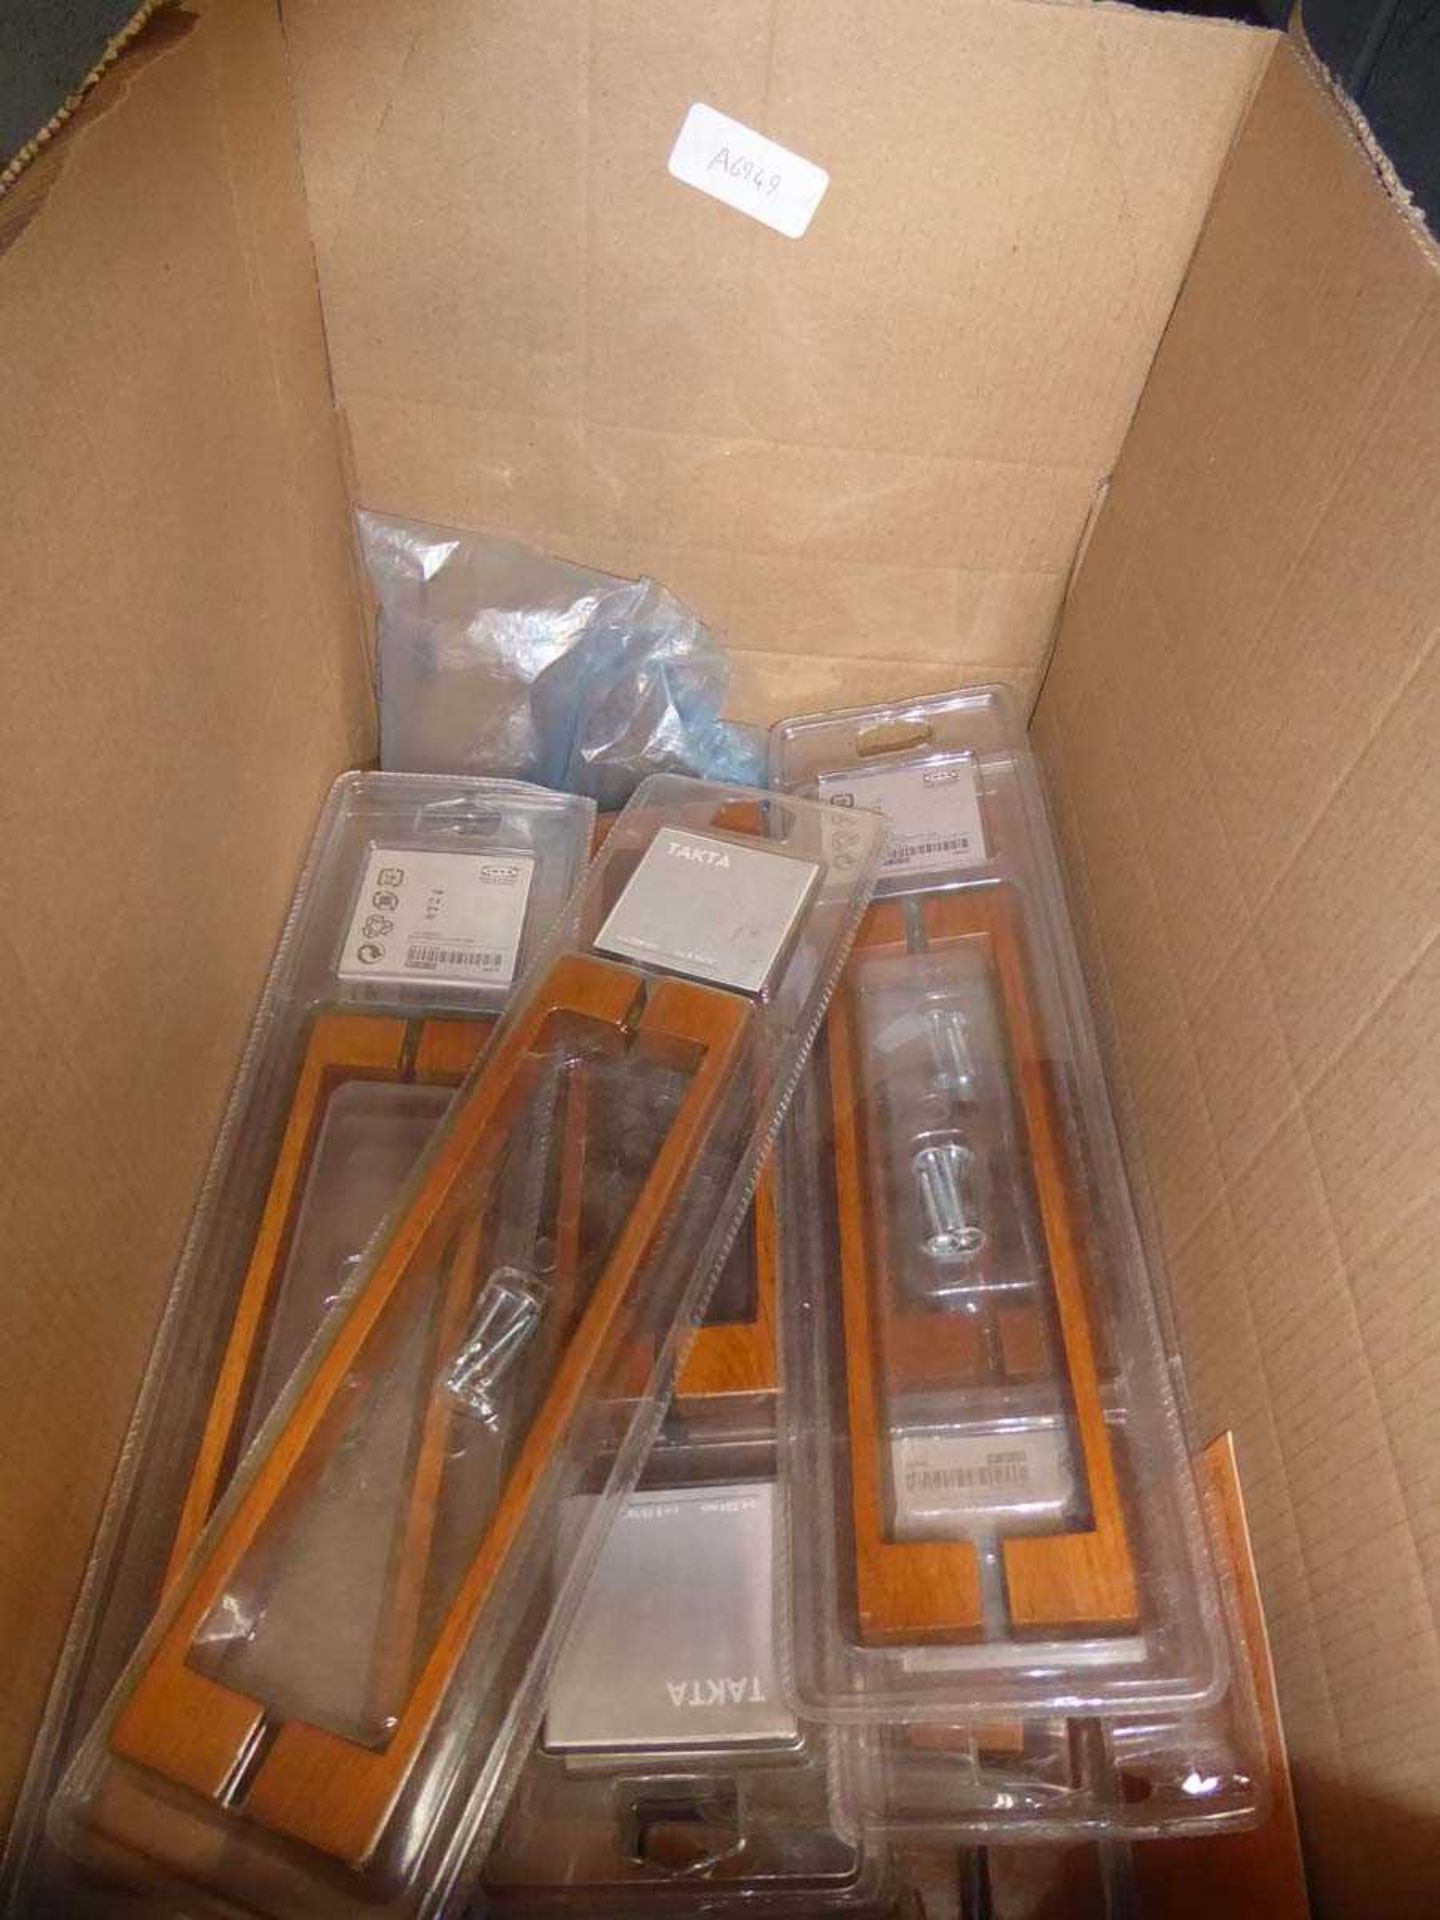 Box of Ikea wooden door handles